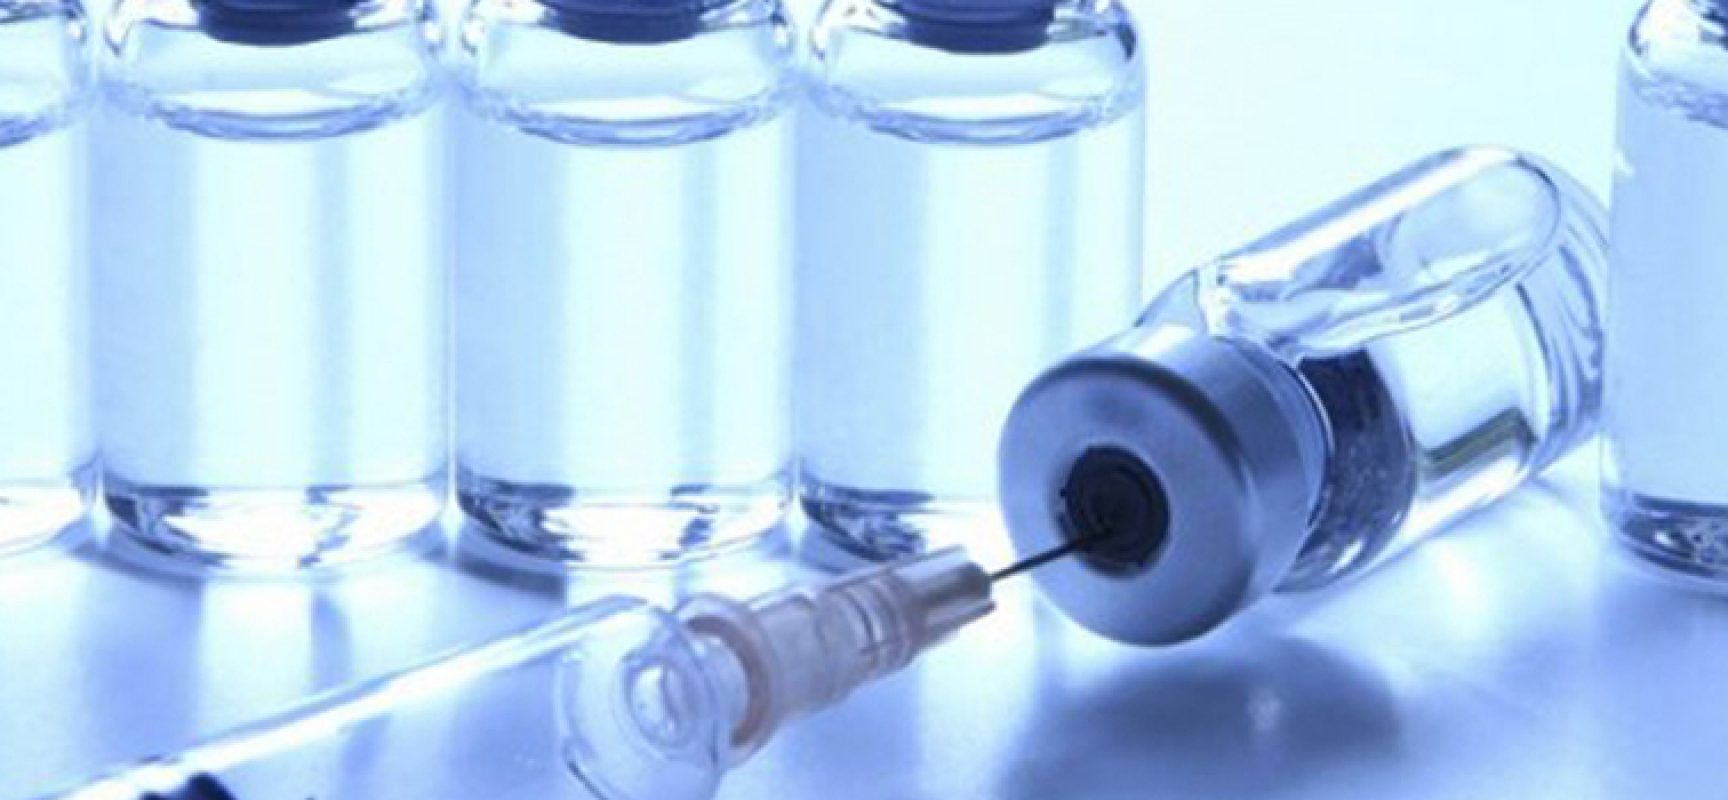 Obbligo vaccinale, Regione Puglia trova accordo per semplificare le procedure